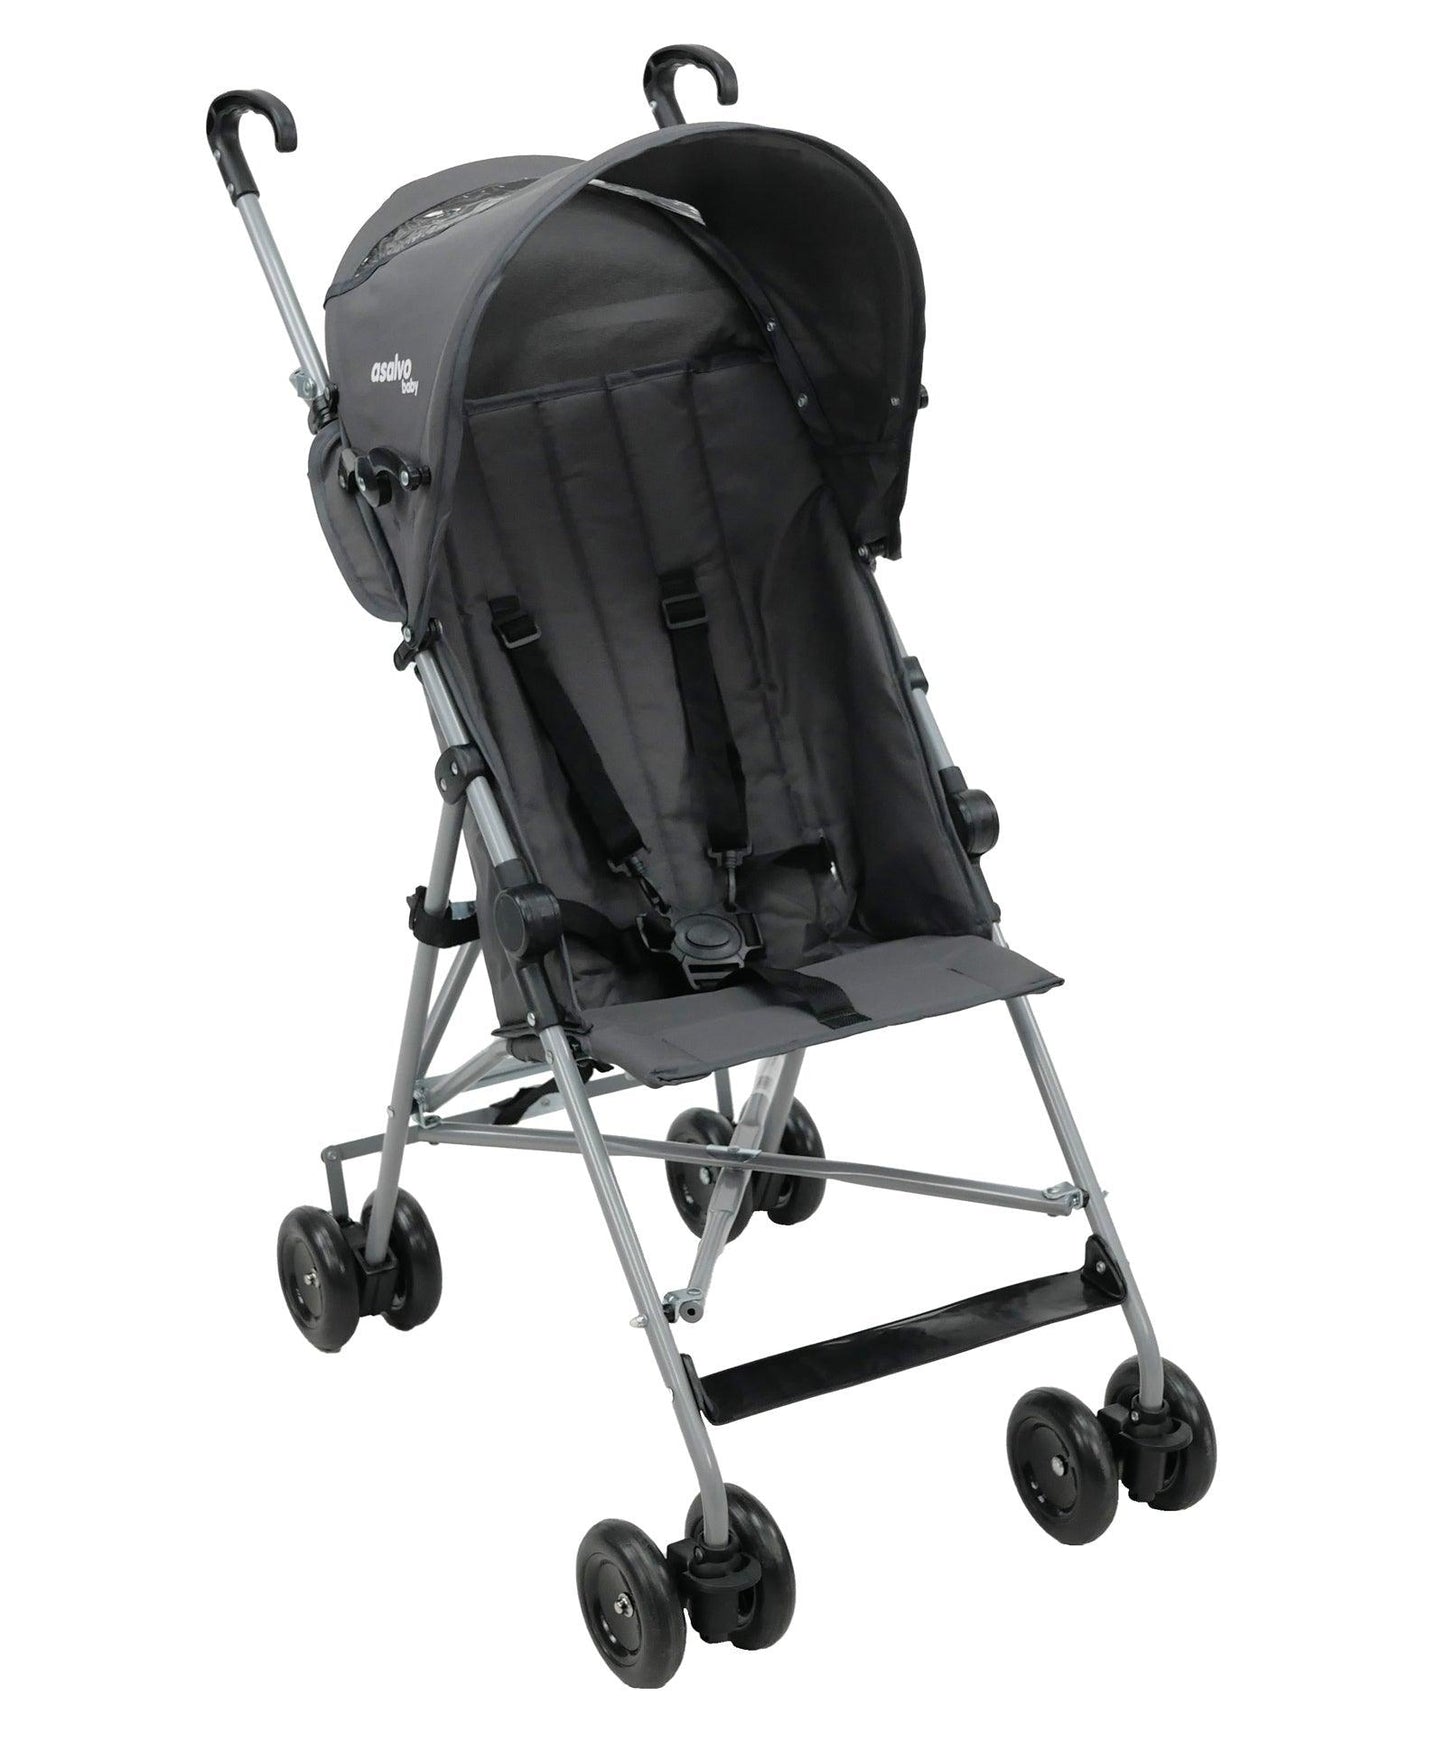 PATOYS | Asalvo 16256 Stroller Moving Coa l For Newborn Baby, Infant Kids, Baby Stroller Asalvo